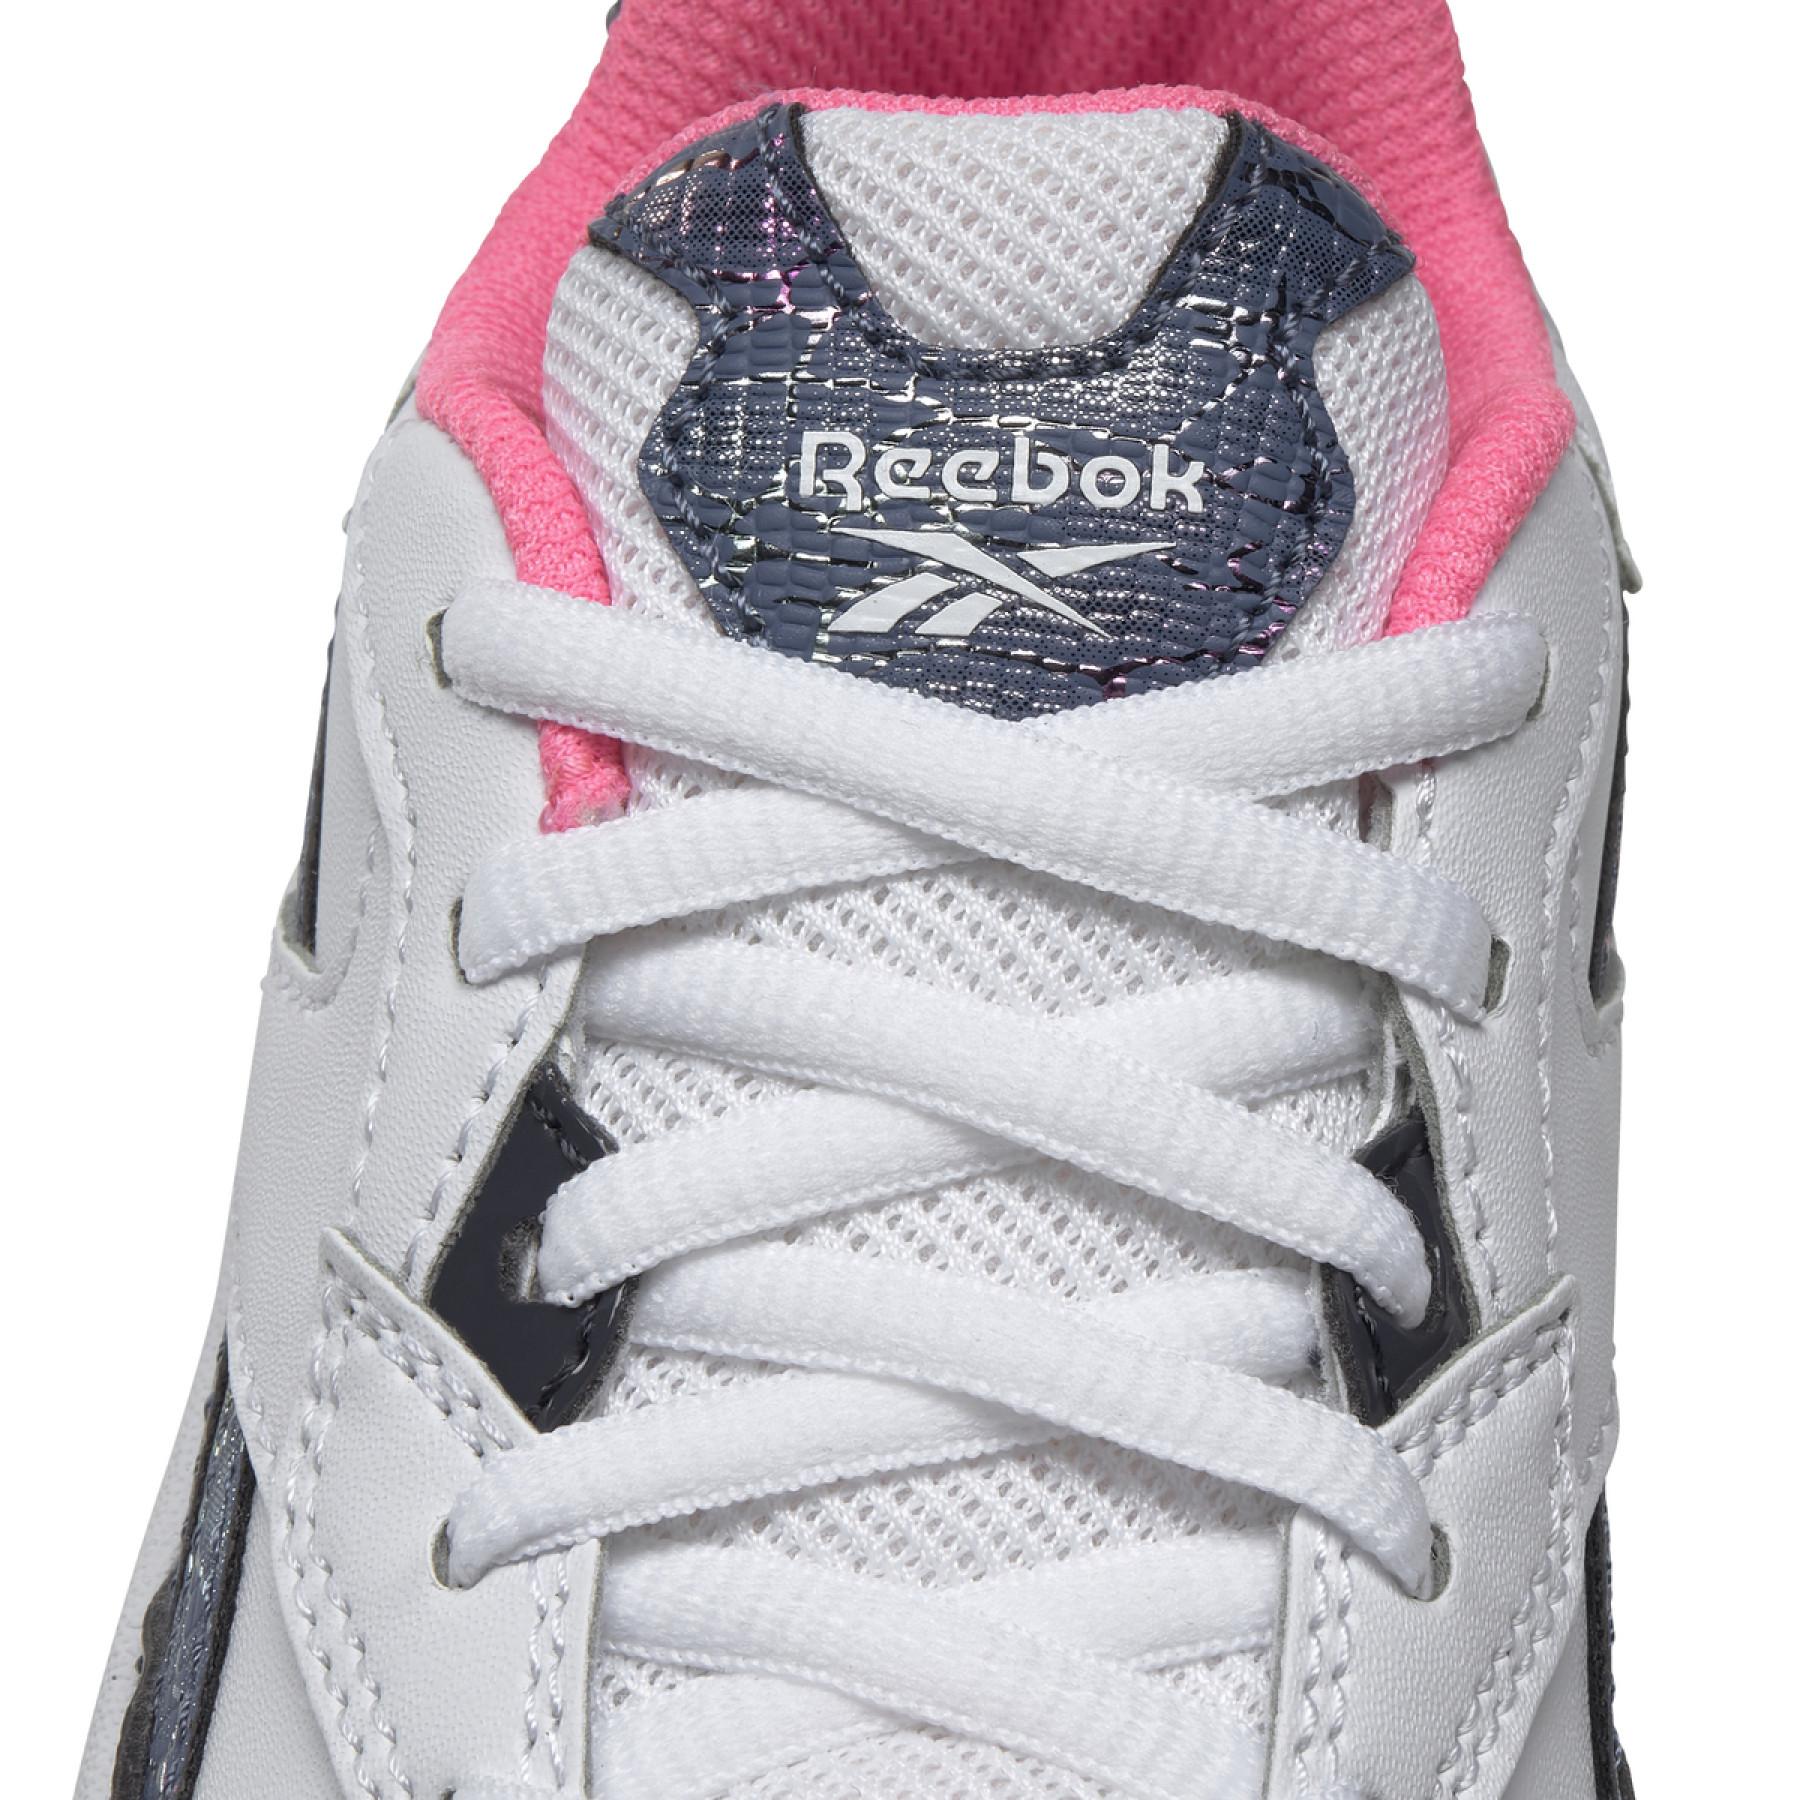 Girl's sneakers Reebok Xeona